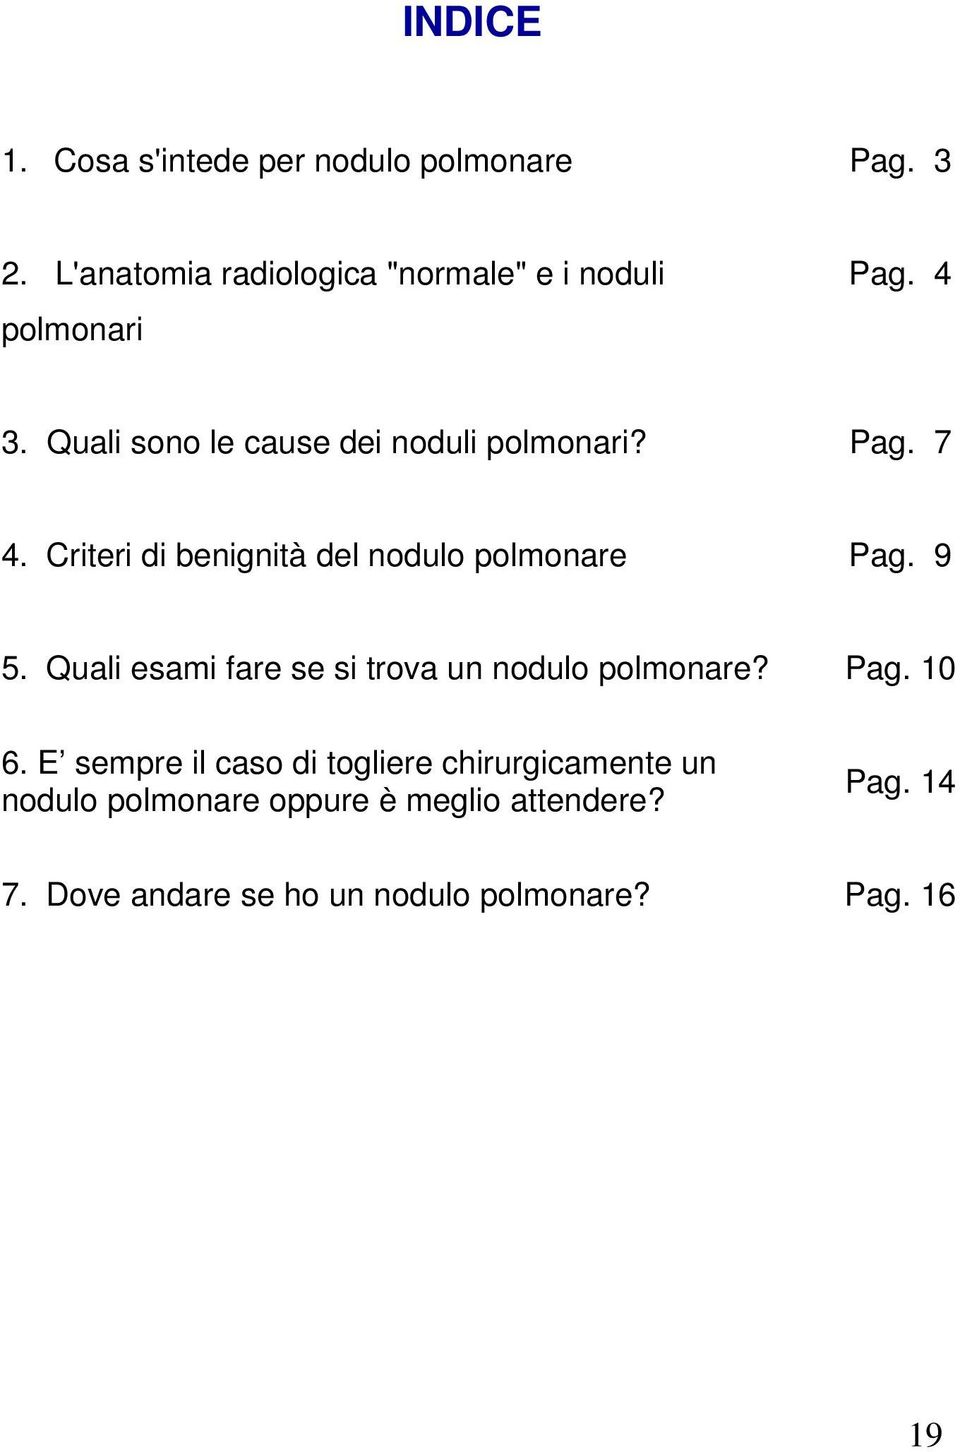 Pag. 7 4. Criteri di benignità del nodulo polmonare Pag. 9 5.